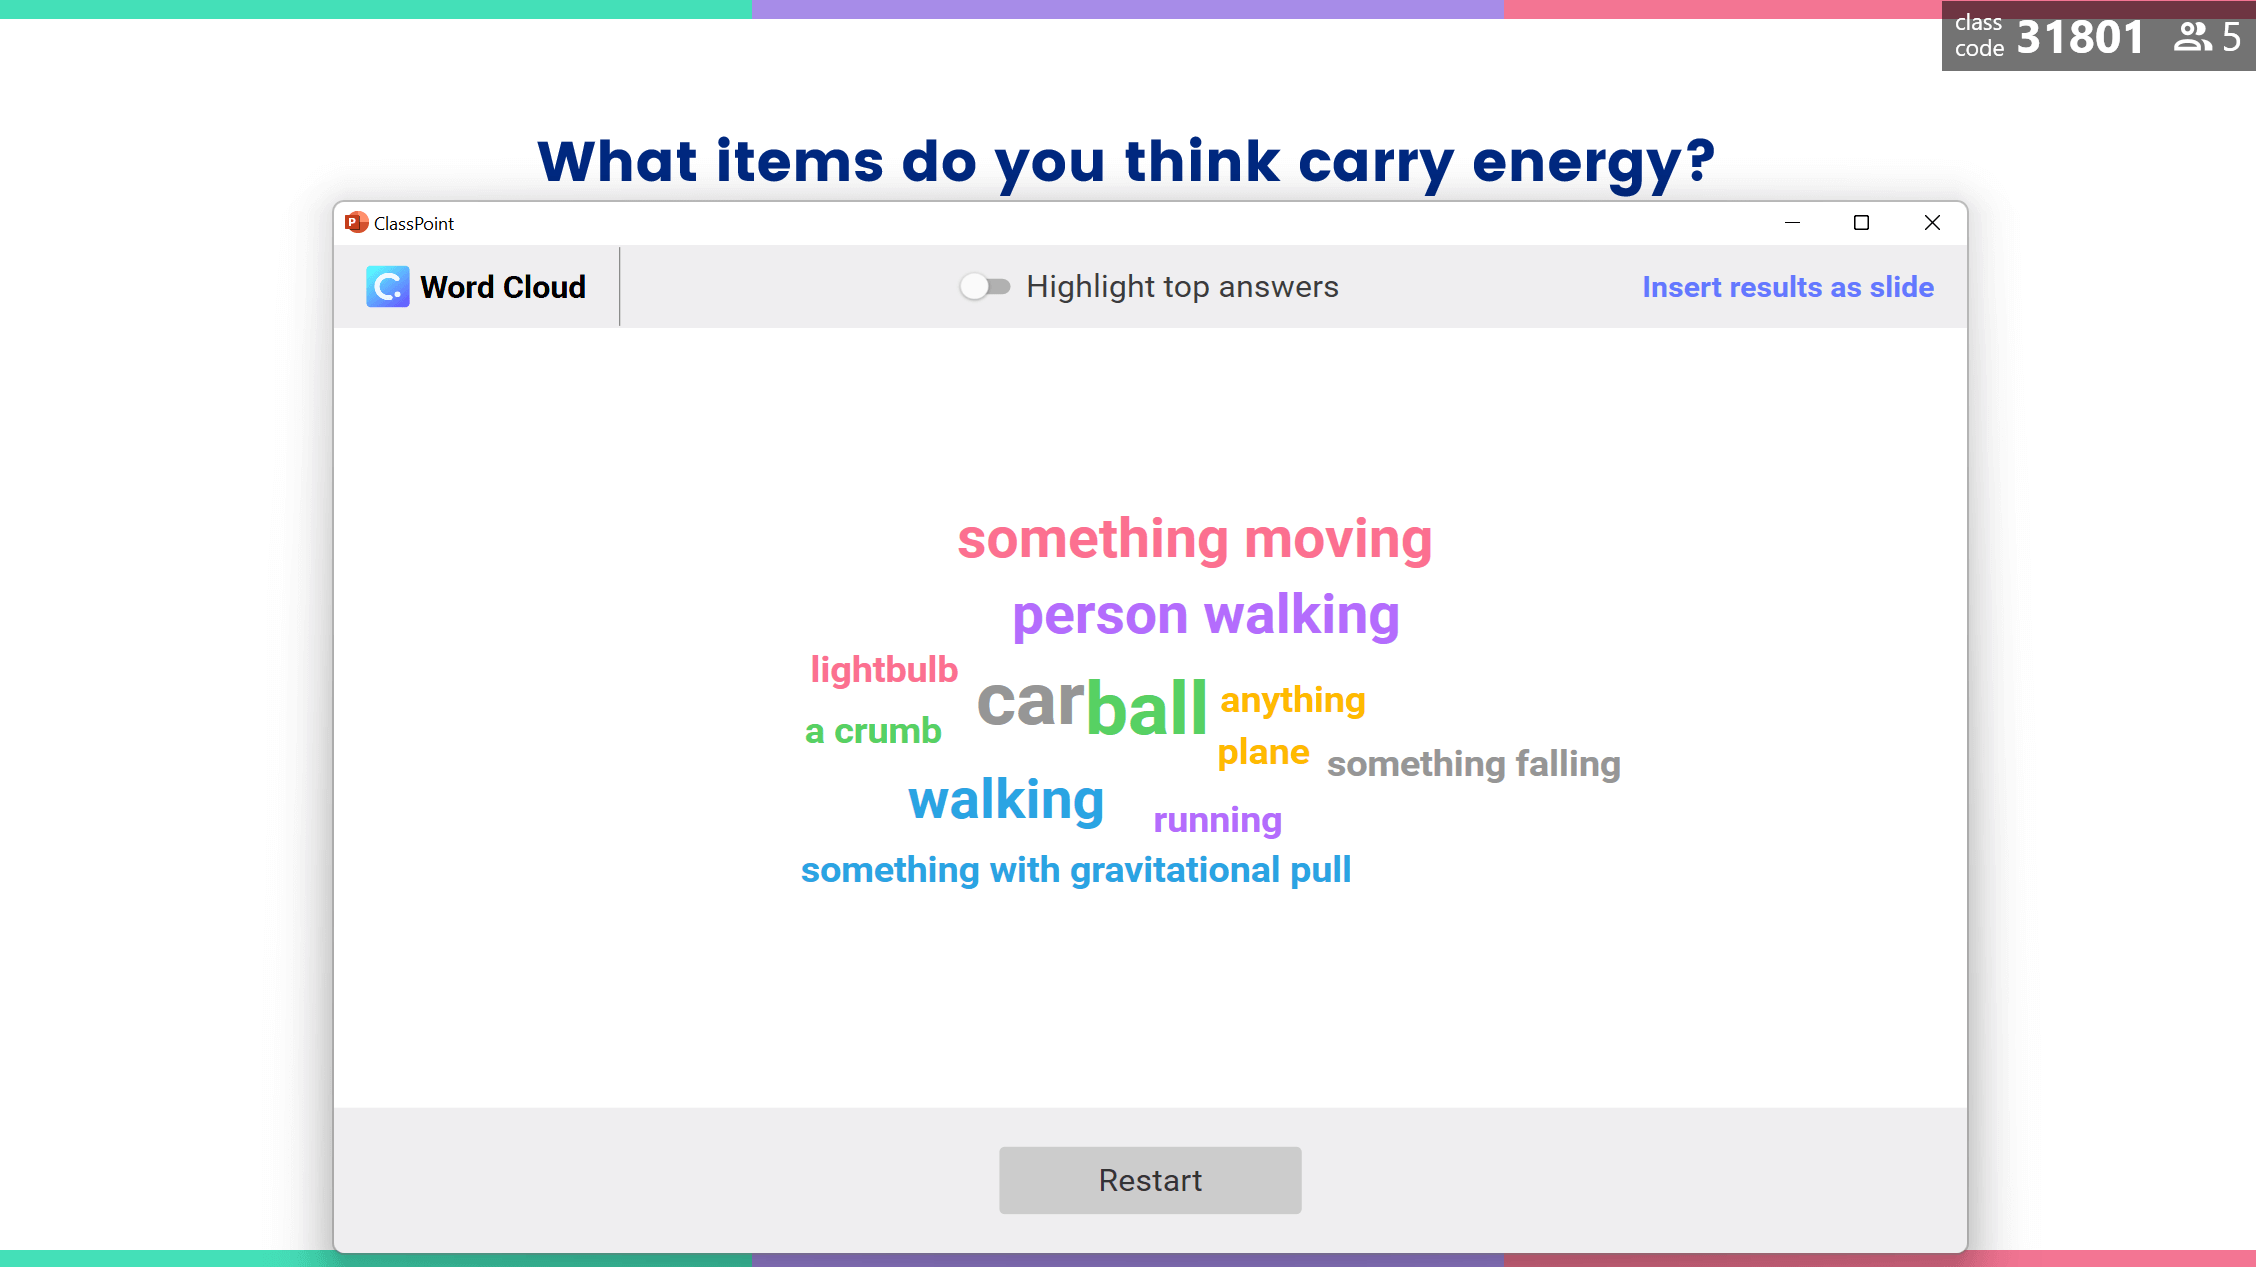 Nube de palabras: ¿Qué objetos crees que son portadores de energía?